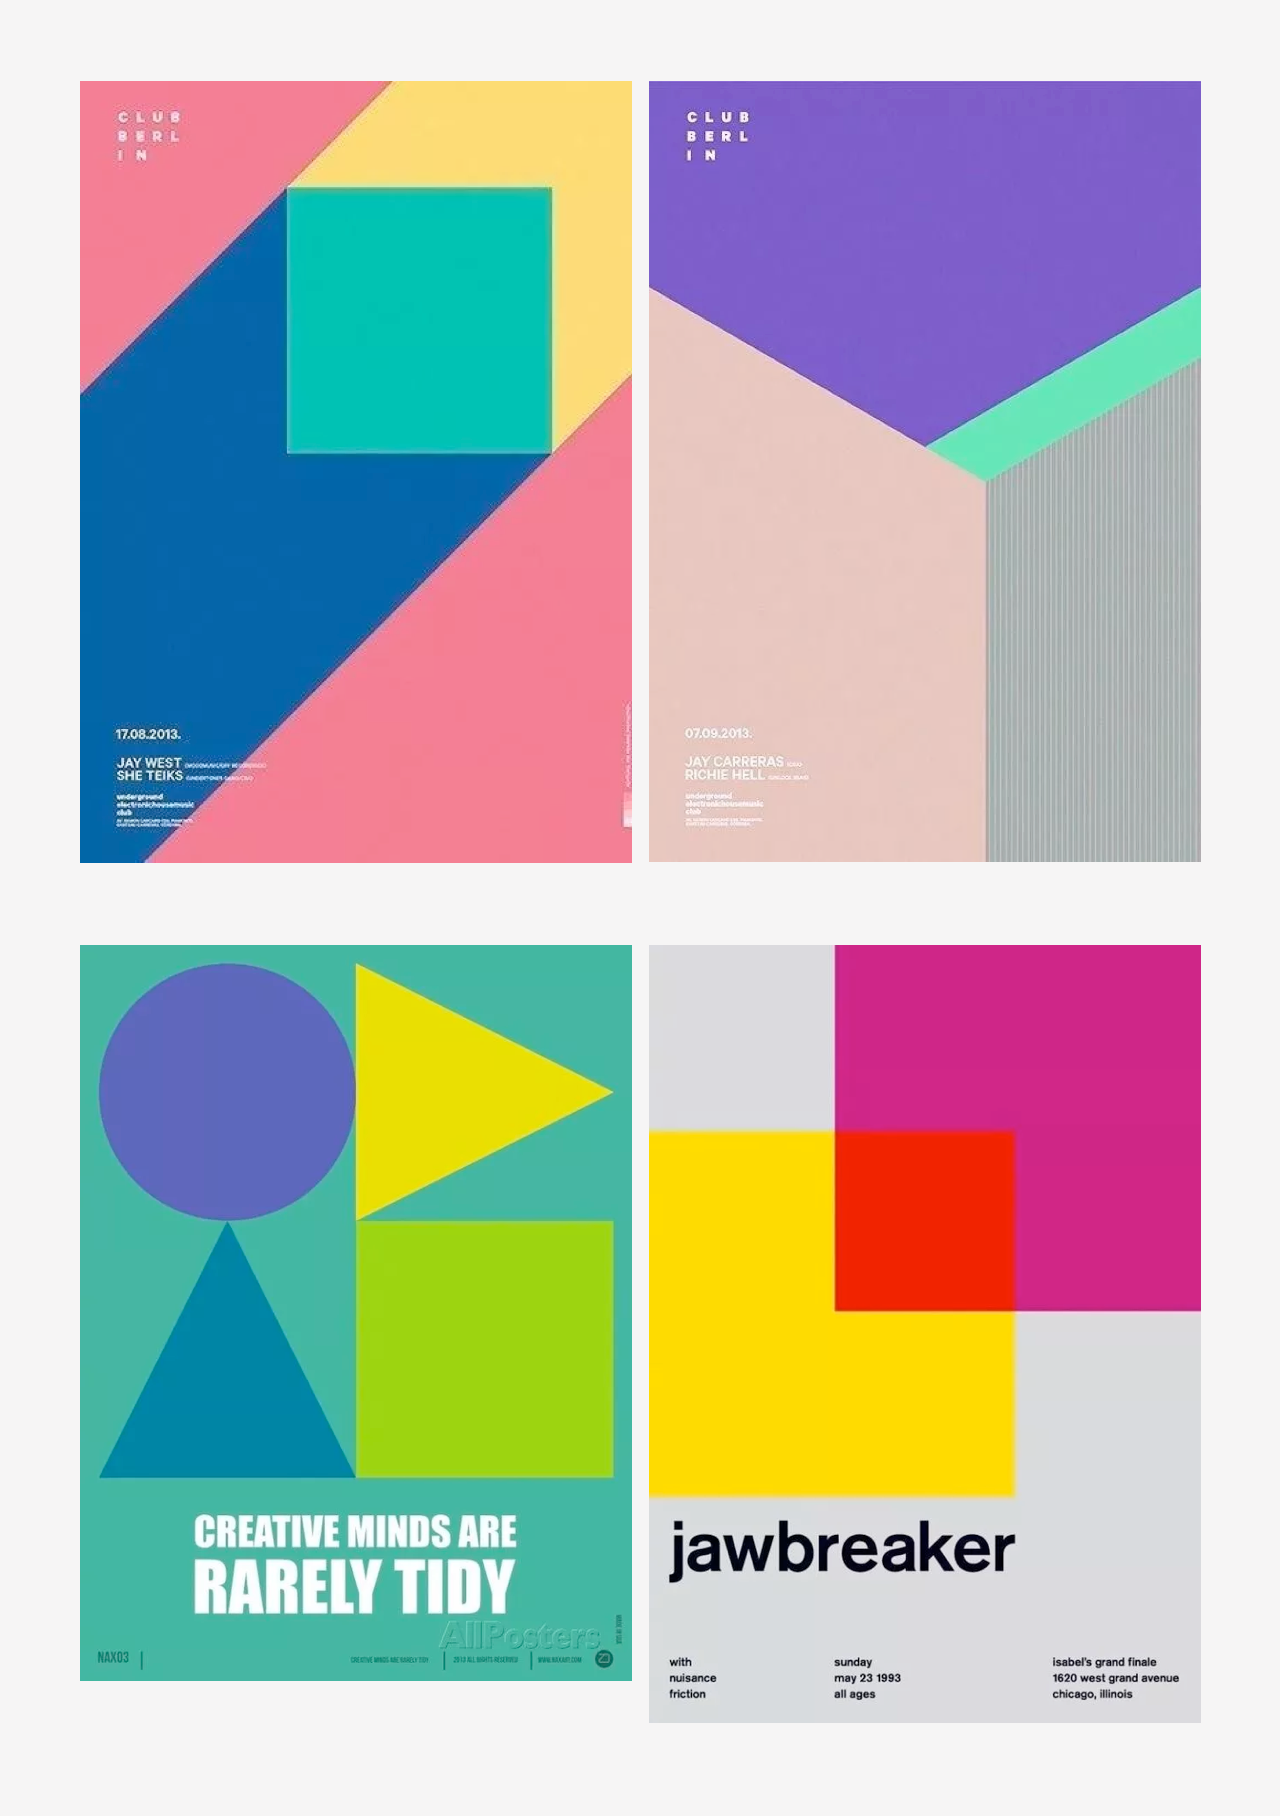 这组海报都是通过简单的平面图形色块来设计,整体色彩搭配舒适,正确